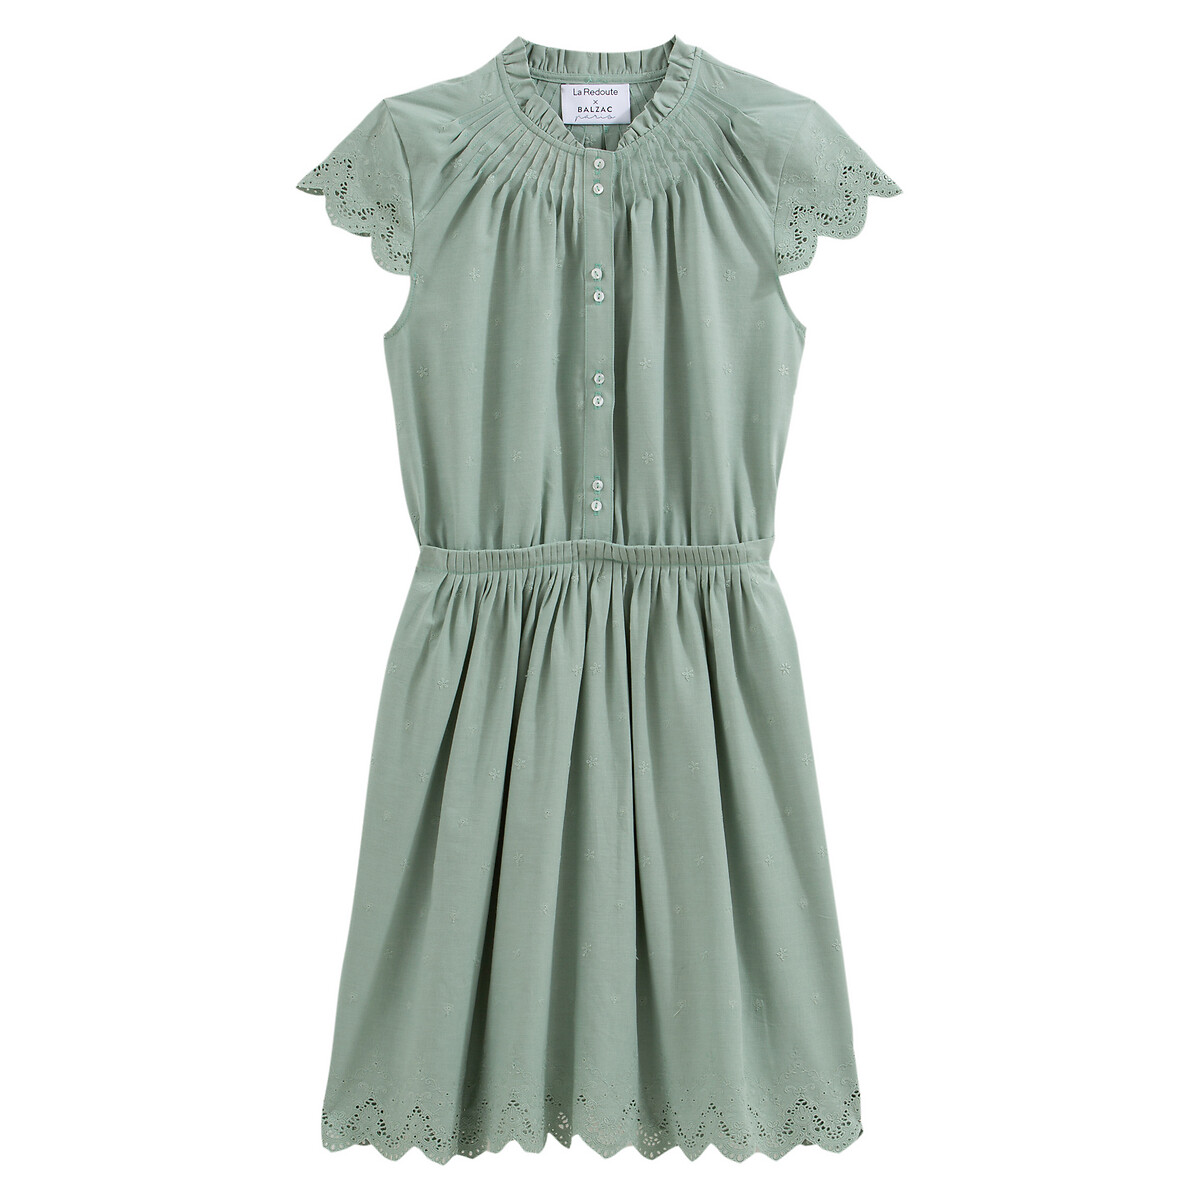 Платье La Redoute С вышивкой и короткими рукавами 42 (FR) - 48 (RUS) зеленый, размер 42 (FR) - 48 (RUS) С вышивкой и короткими рукавами 42 (FR) - 48 (RUS) зеленый - фото 1